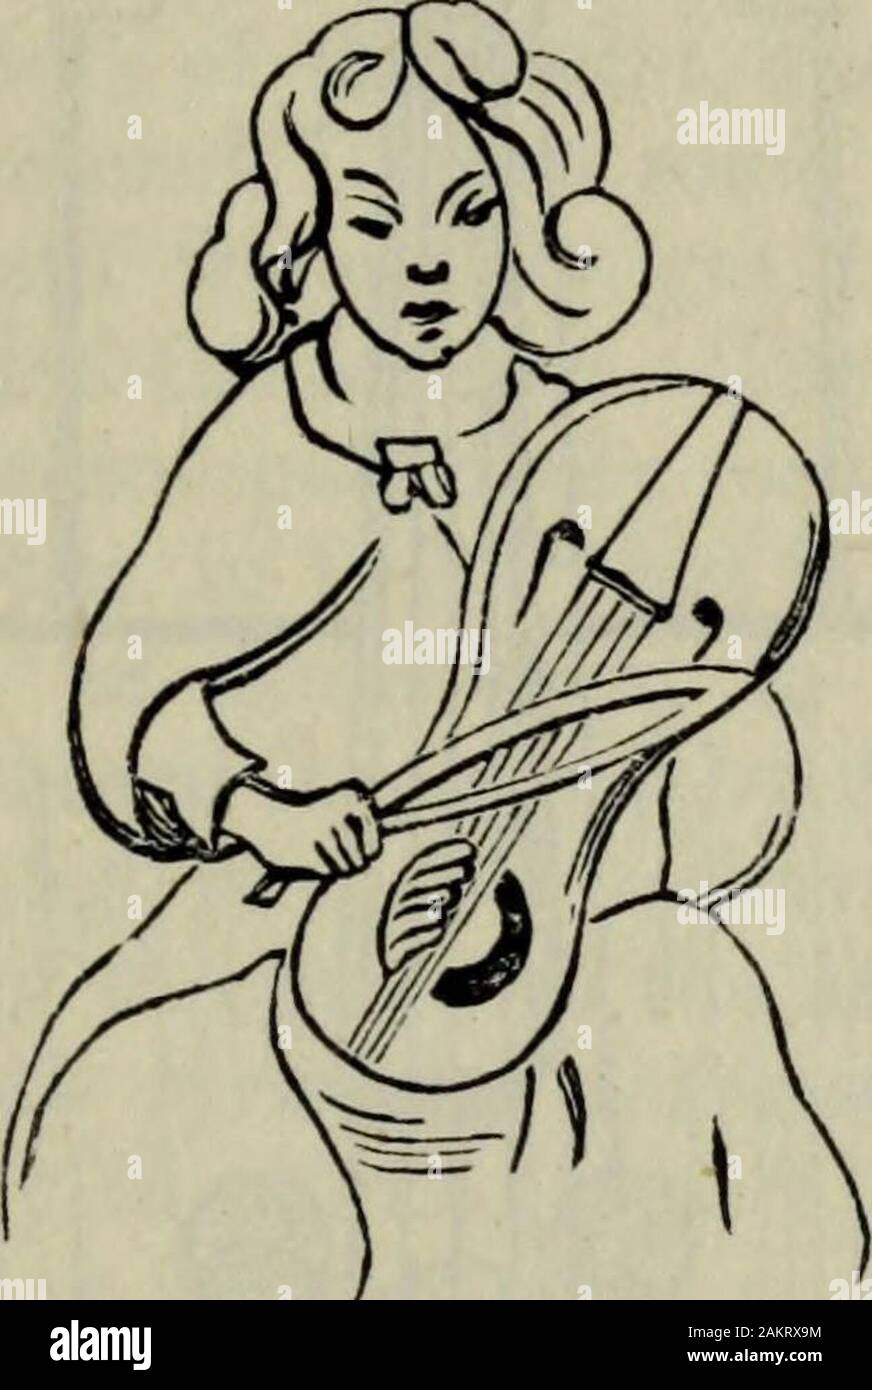 Lutherie, comme c'était et c'est : d'être un historique, théorique et pratique traité sur la science et l'art de lutherie, pour l'utilisation des luthiers et des joueurs amateurs et professionnels, étant le laterand . forme améliorée de ce dernier, et certainement la similitude de 1 J. Ruhlmann, Geschichte der Bogeninsfrumente (Nouveau-Brunswick, 1882), 2 M. Gerbert, De Cantu et Musica Sacra, 1774. Le CRWTH GALLOIS. 63 noms est digne de remarque (bien qu'il faut garder à l'mindthat, comme je l'ai déjà dit, les noms n'ont pas beentransferred rare d'un instrument à l'autre ; la similarité des namesis de Banque D'Images